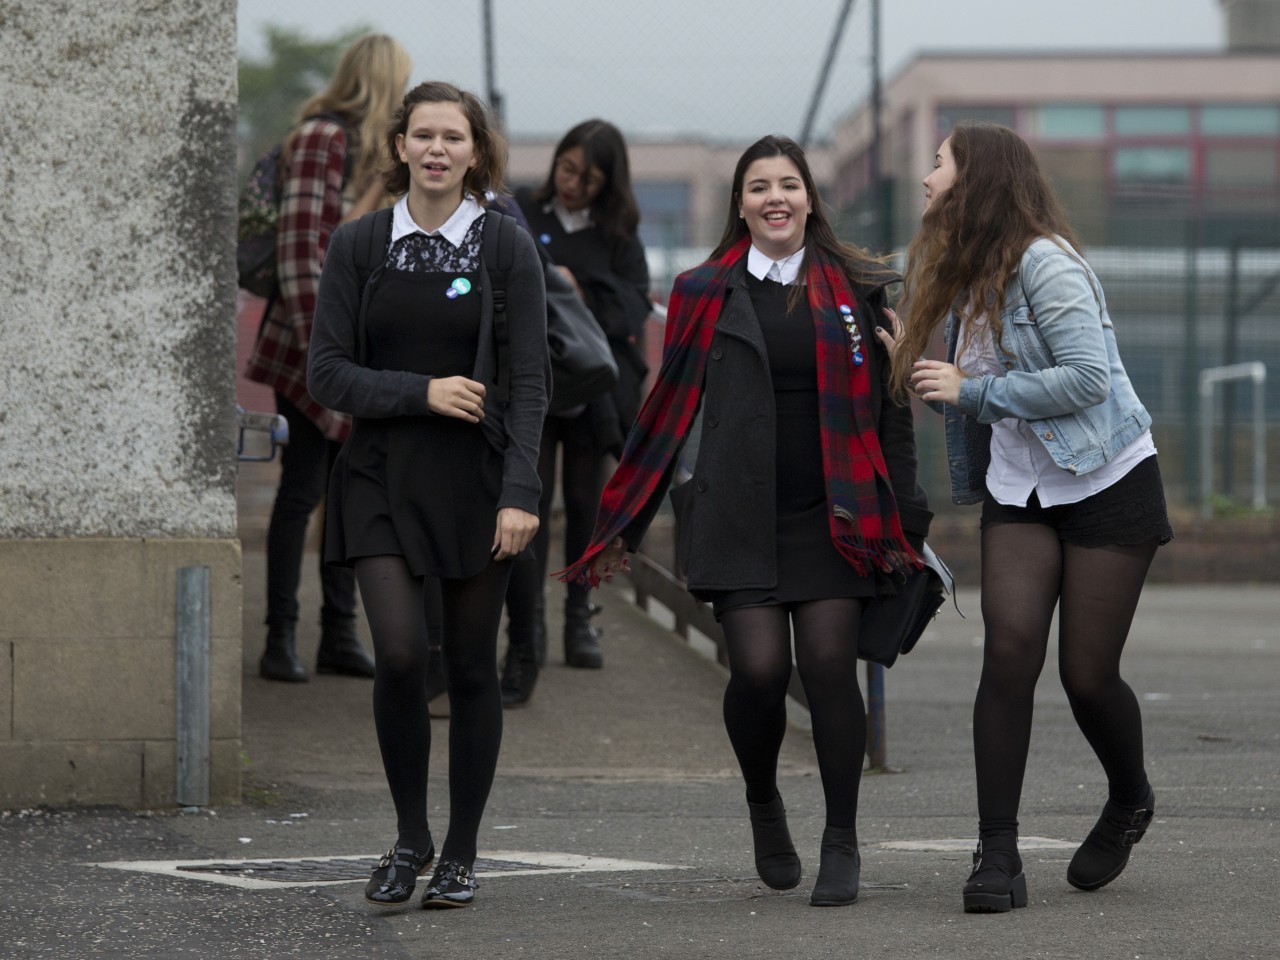 Schoolgirls forum. Шотландские девушки на улице. Шотландии девушки в колготках.